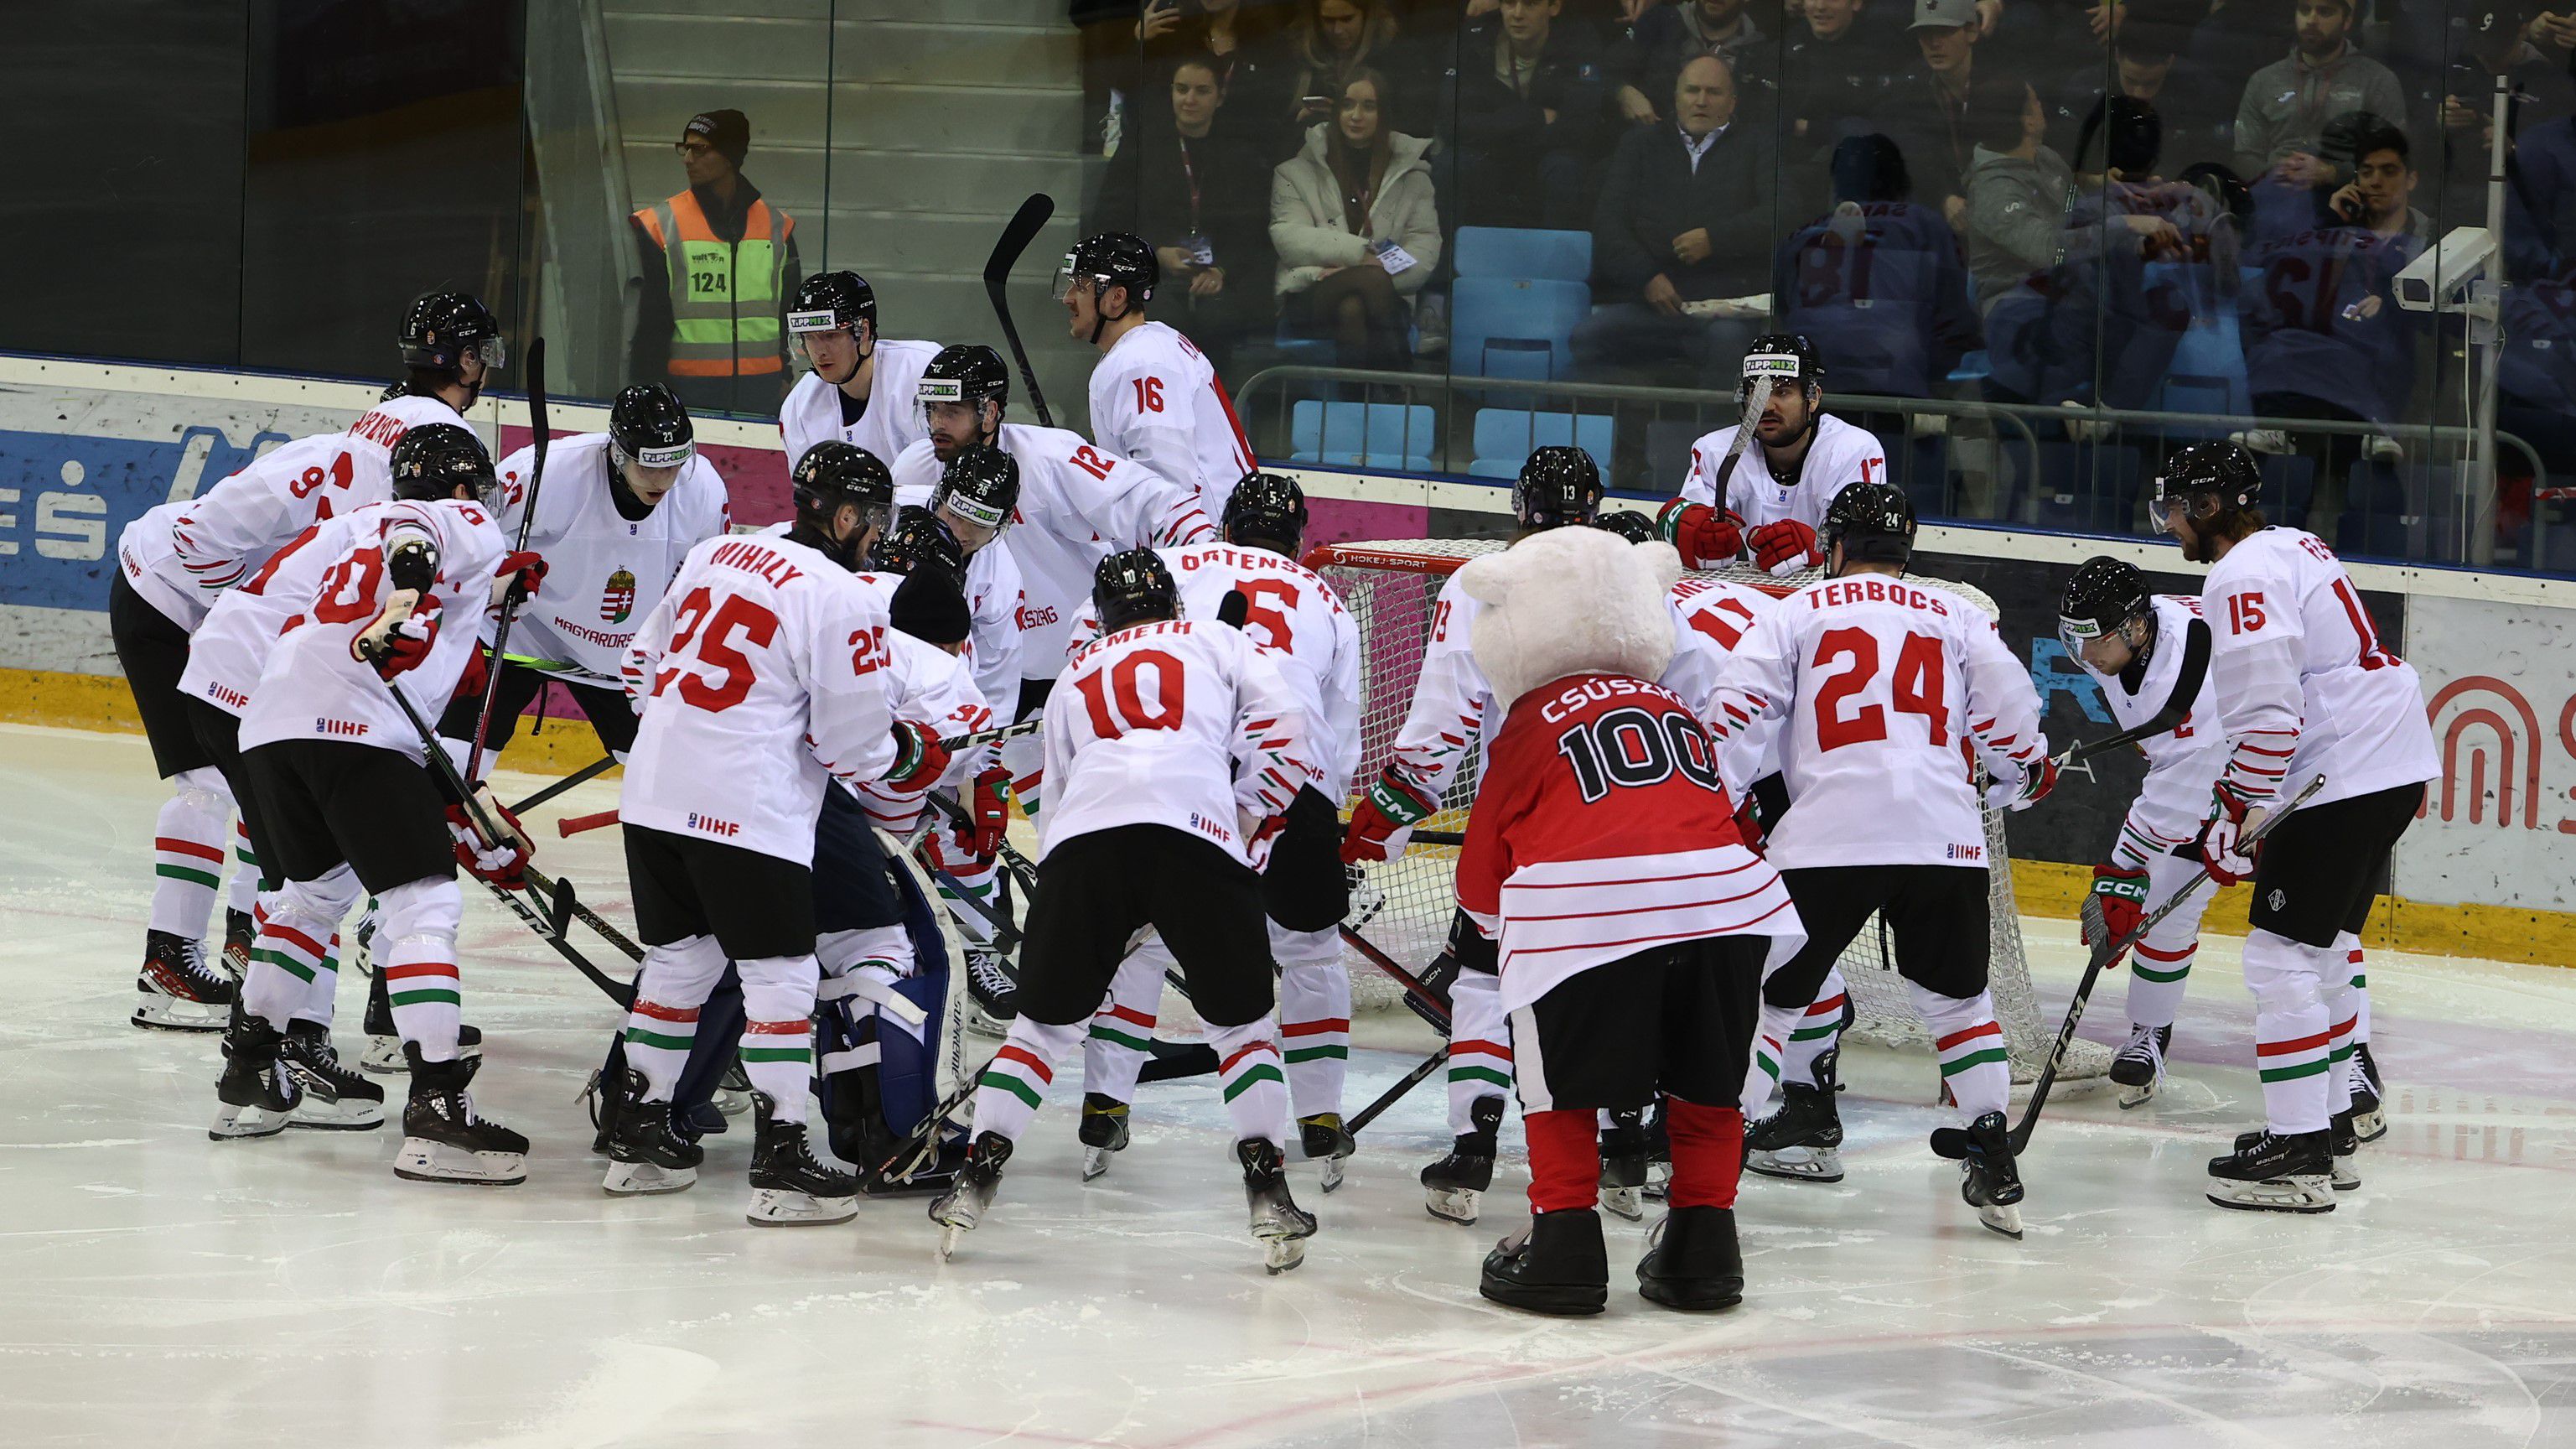 Úgy tűnik, kap még egy esélyt a magyar jégkorong-válogatott az olimpiai szereplés kiharcolására (Fotó: Pozsonyi Zita)